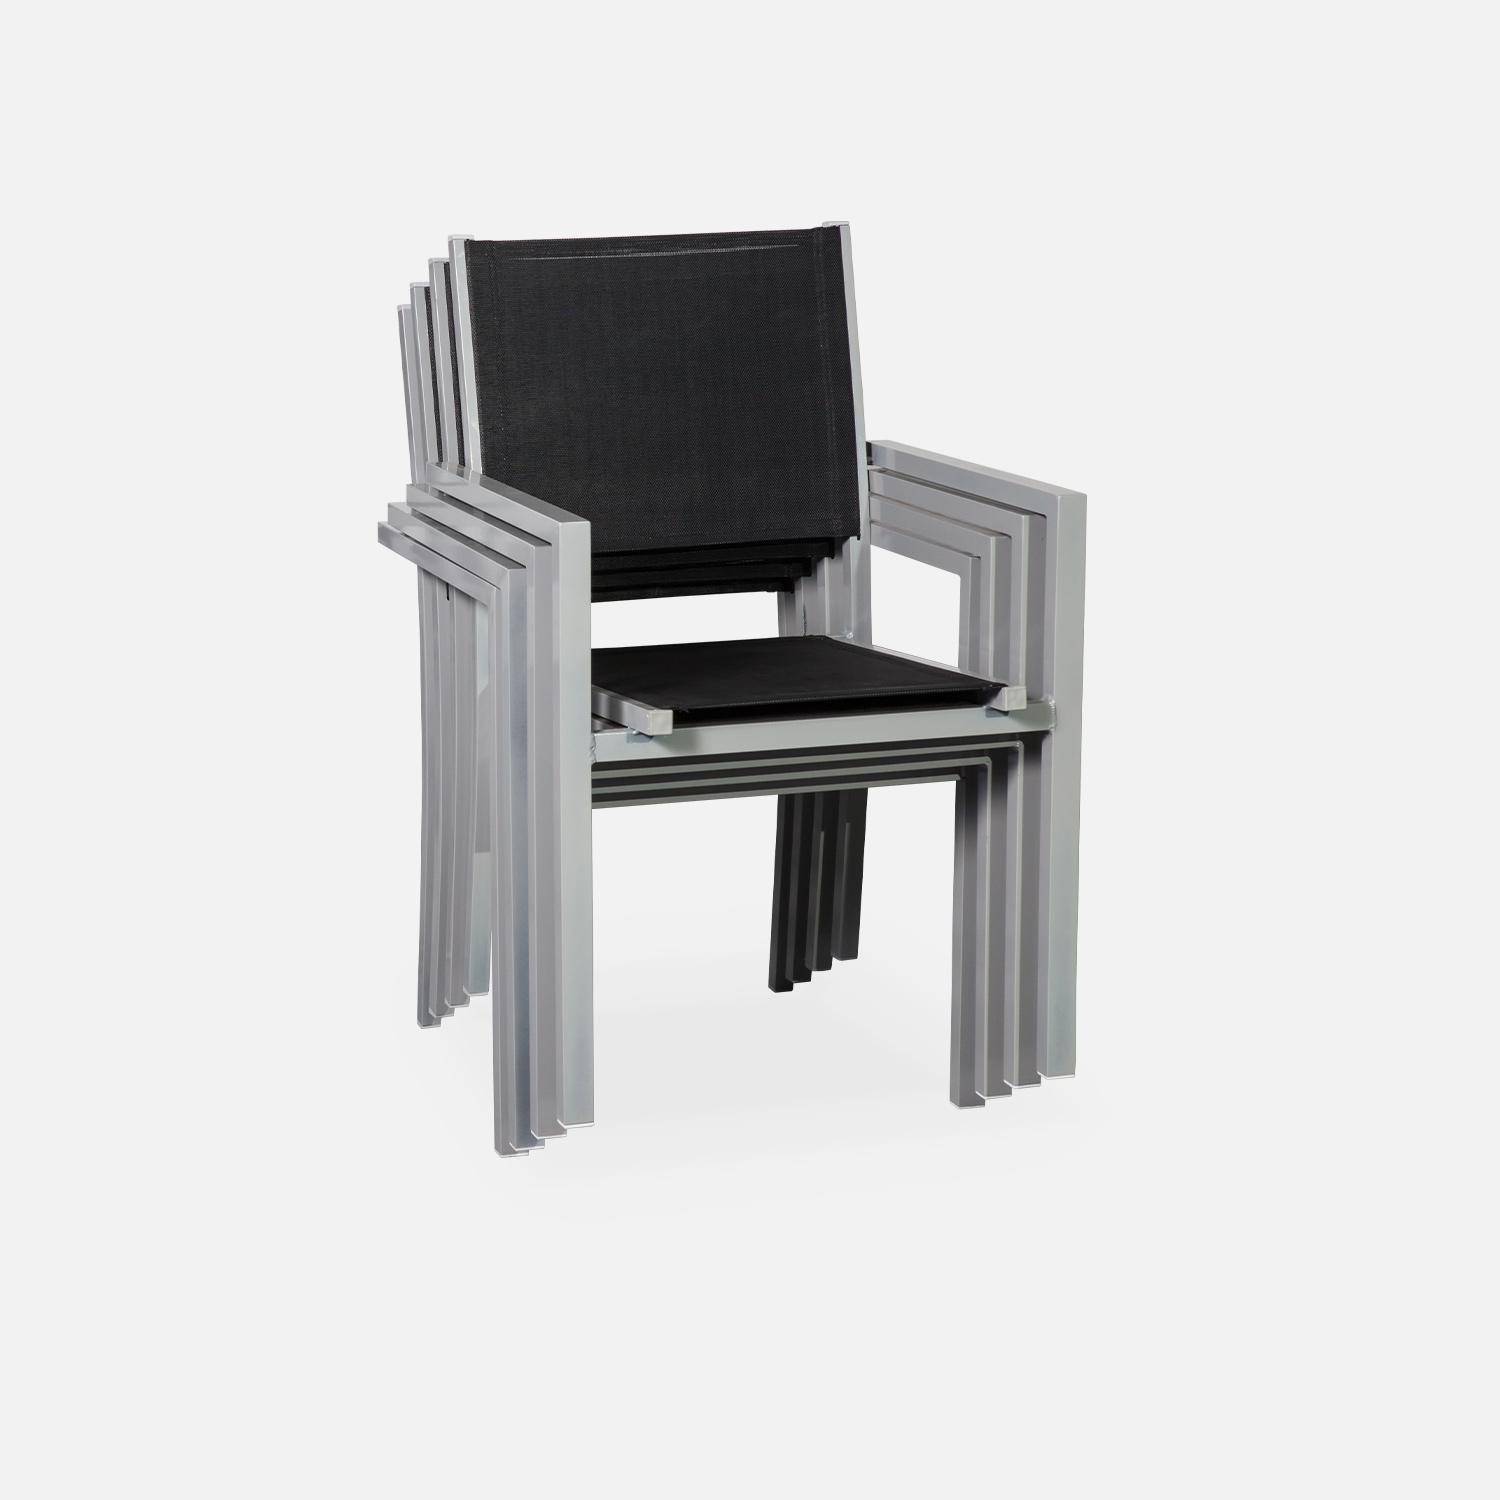 Ensemble Capua, 1 table 150cm et 6 fauteuils en aluminium et textilène Photo4